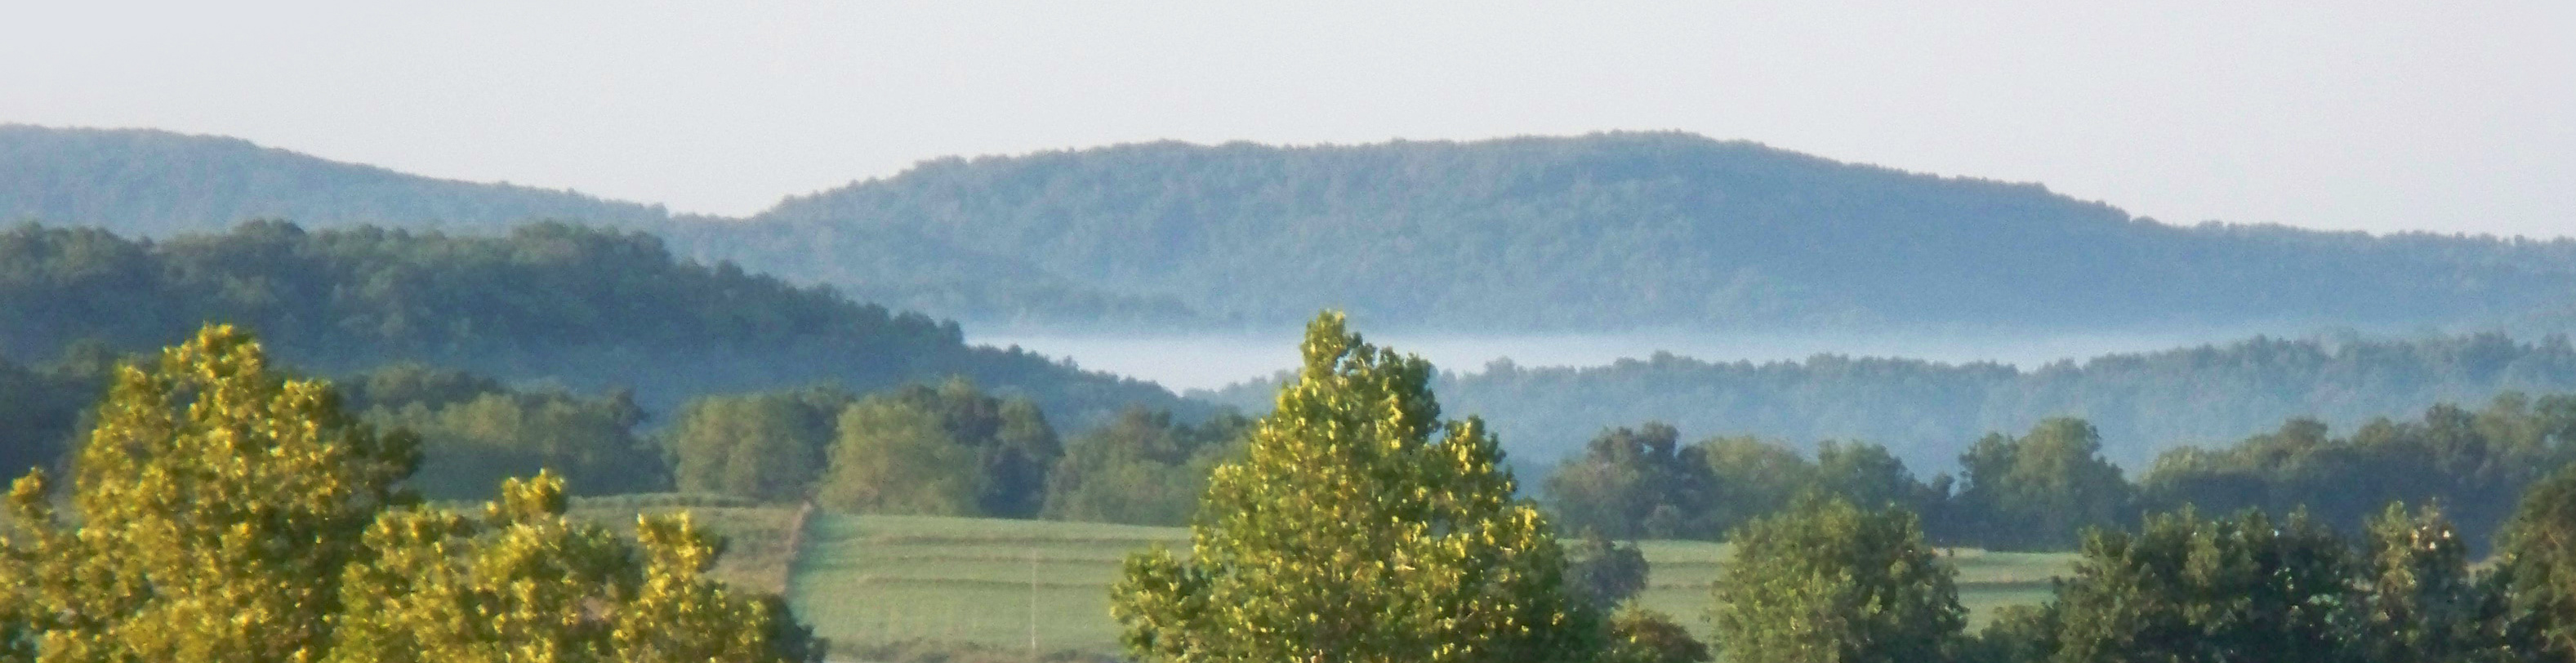 Scene of Arkansas countryside